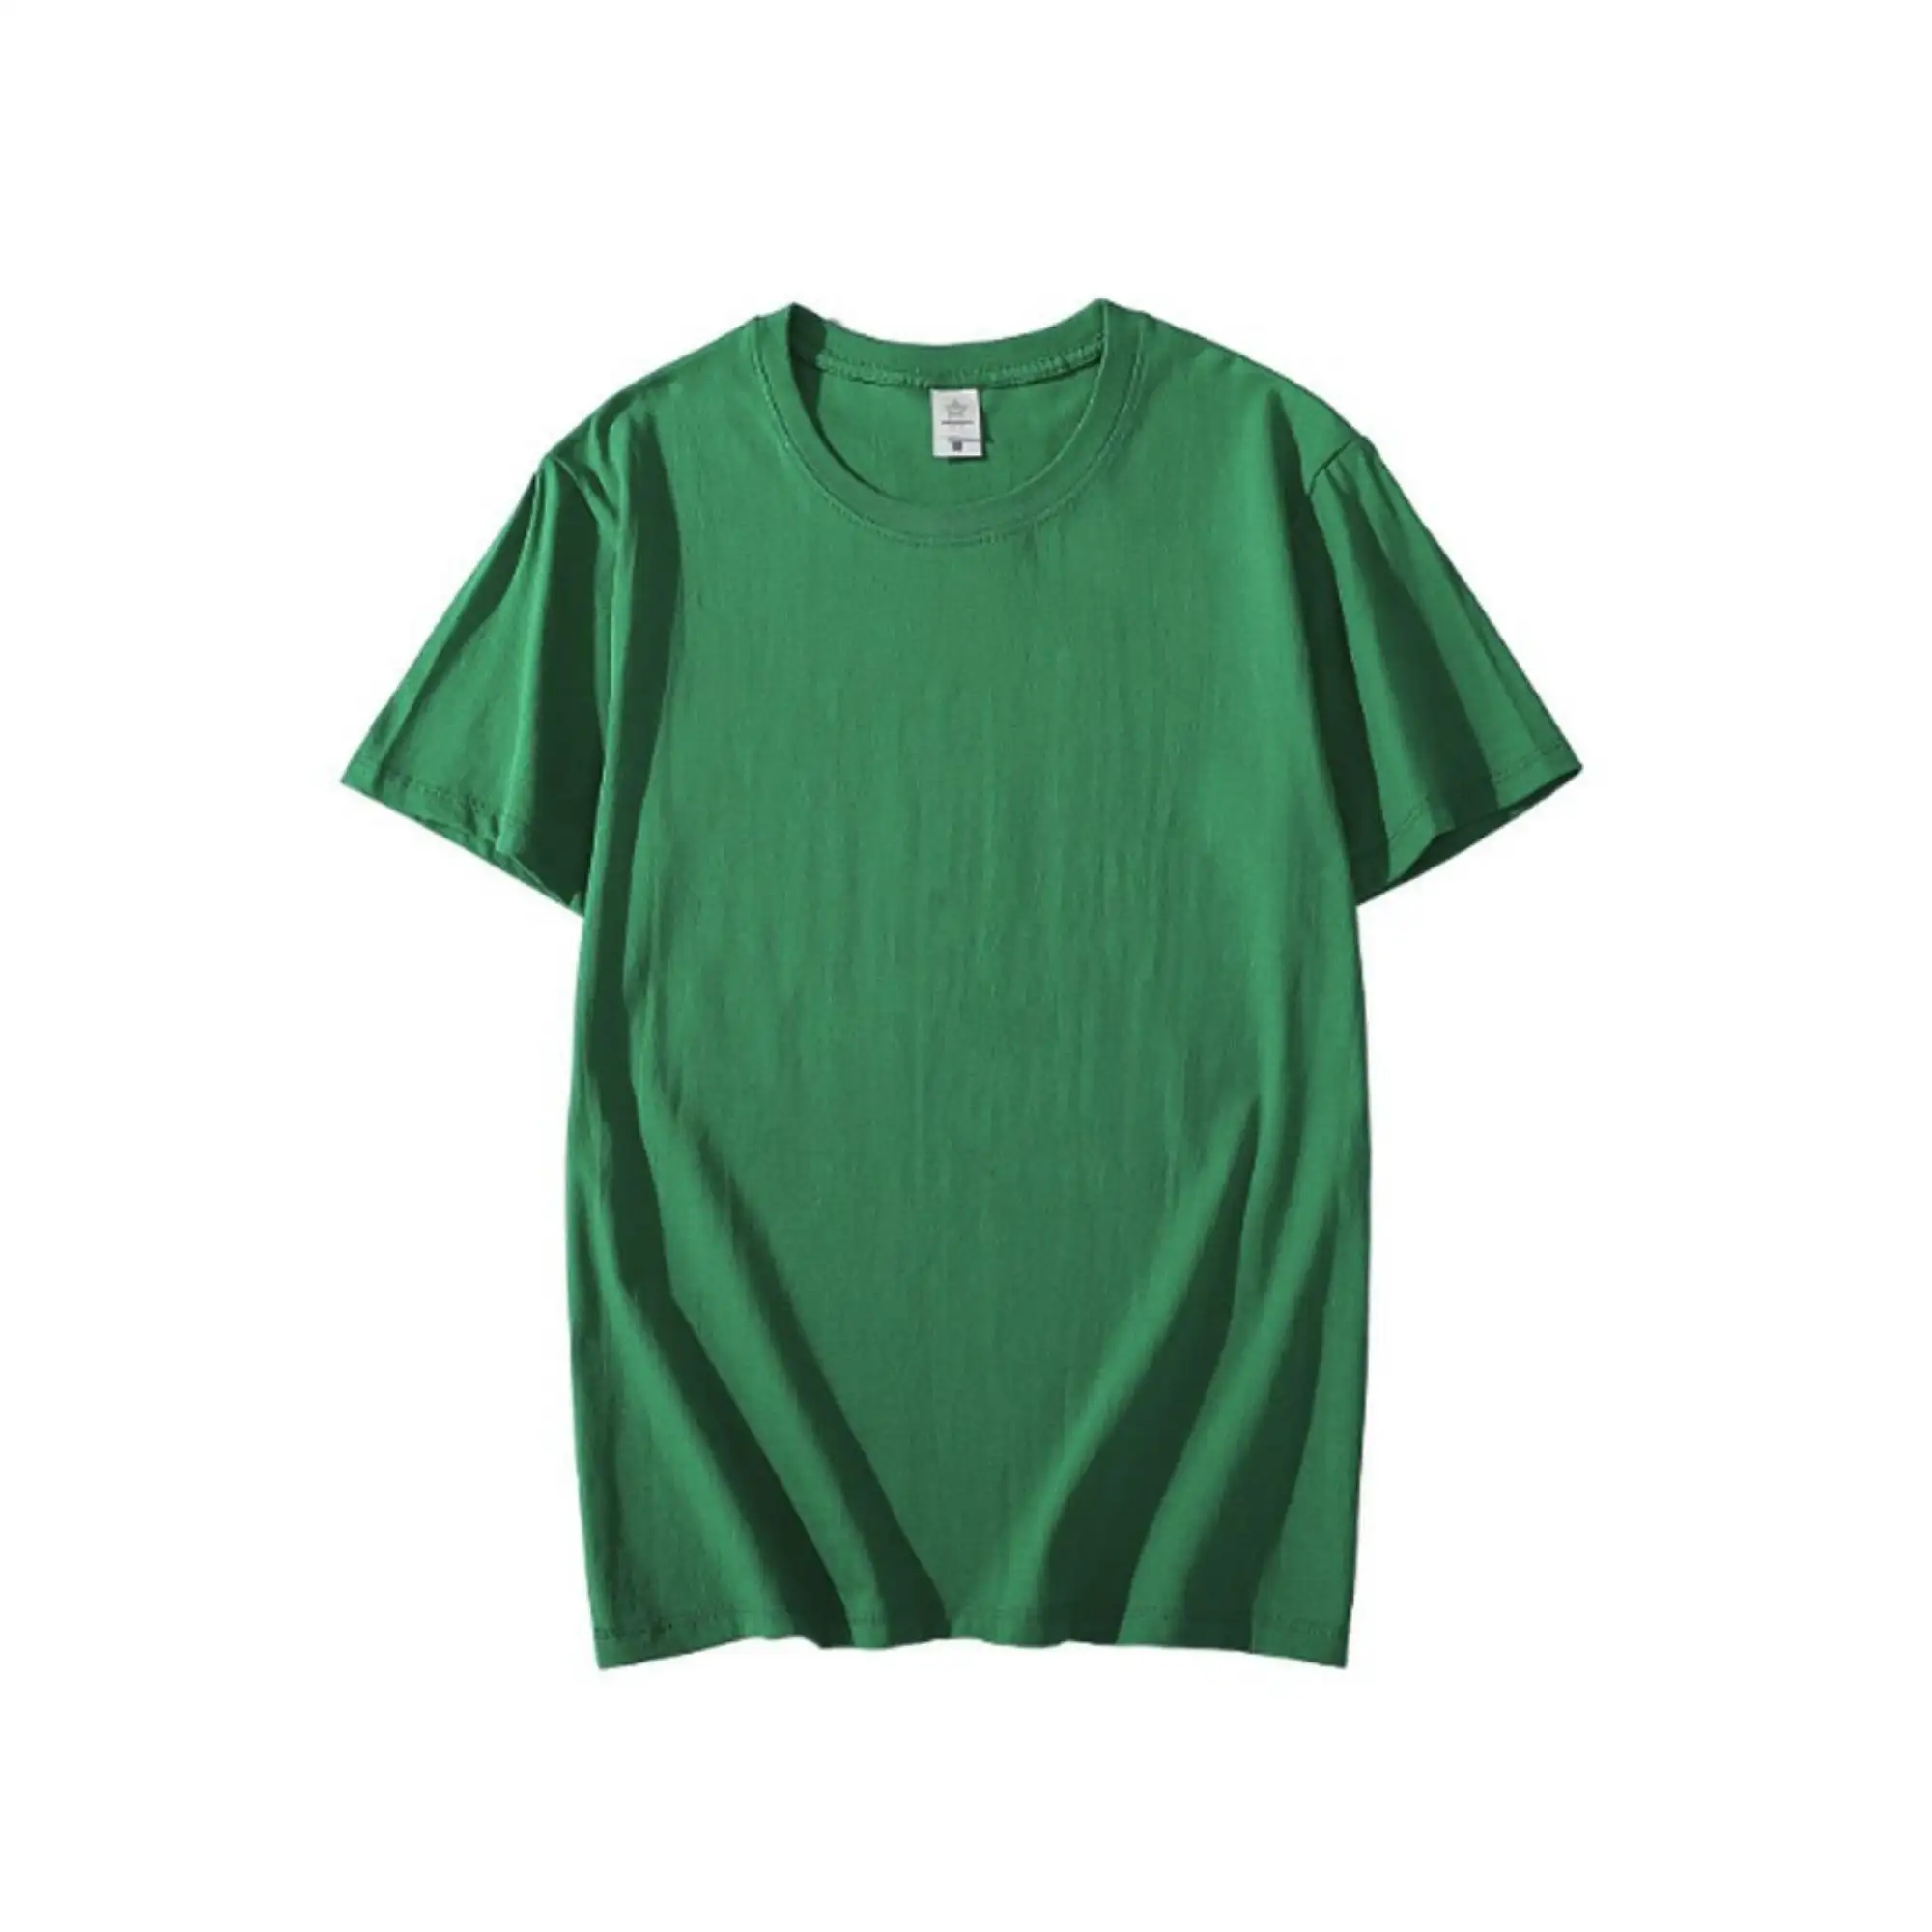 Échantillon pour T-shirt, vente en gros, impression graphique personnalisée, T-shirts de couleur unie, poids lourd 100% coton, T-shirts unisexes